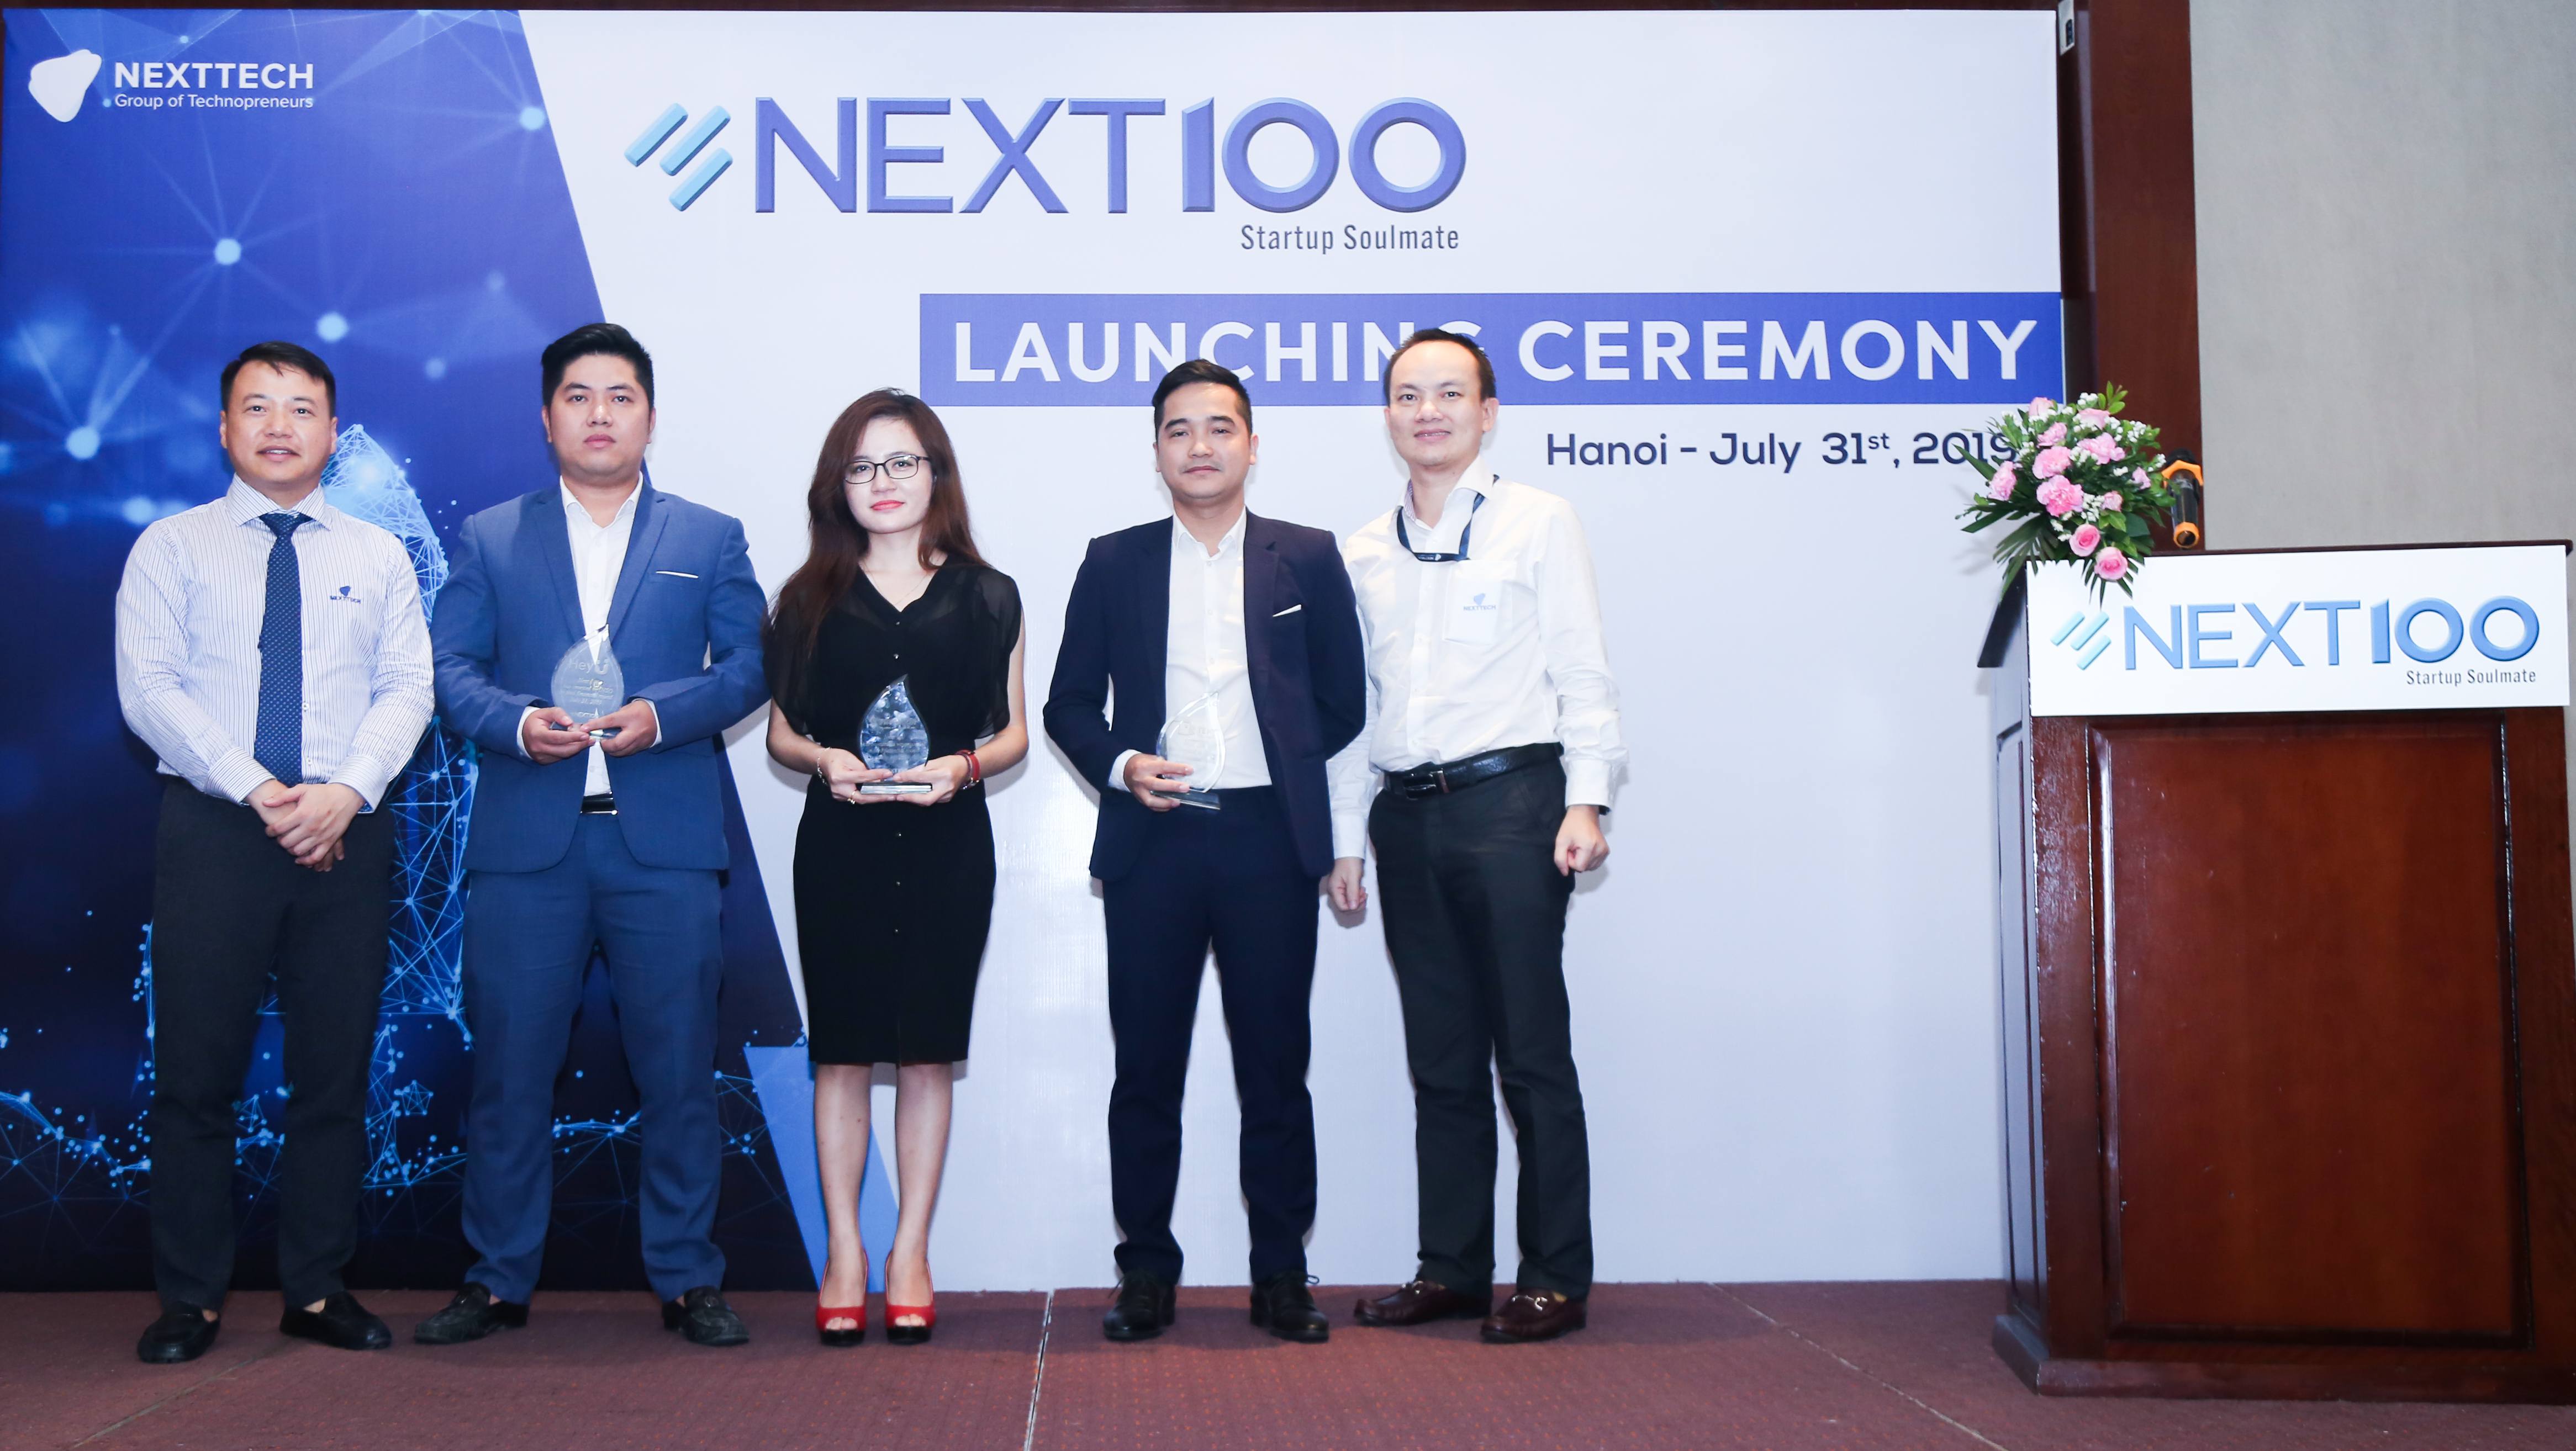 [全球快讯]越南阿里巴巴Nexttech推出1000万美元早期风投基金